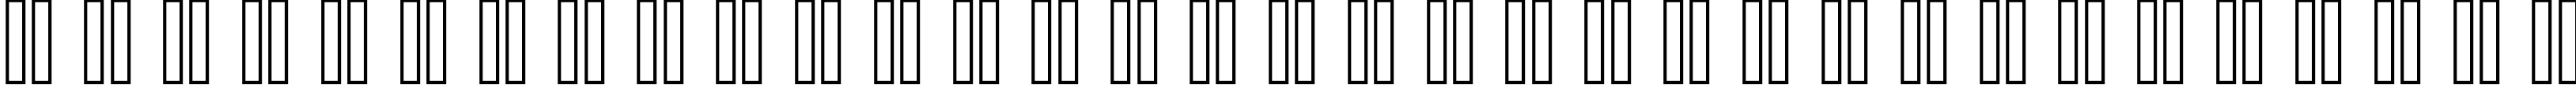 Пример написания русского алфавита шрифтом classic 10_65